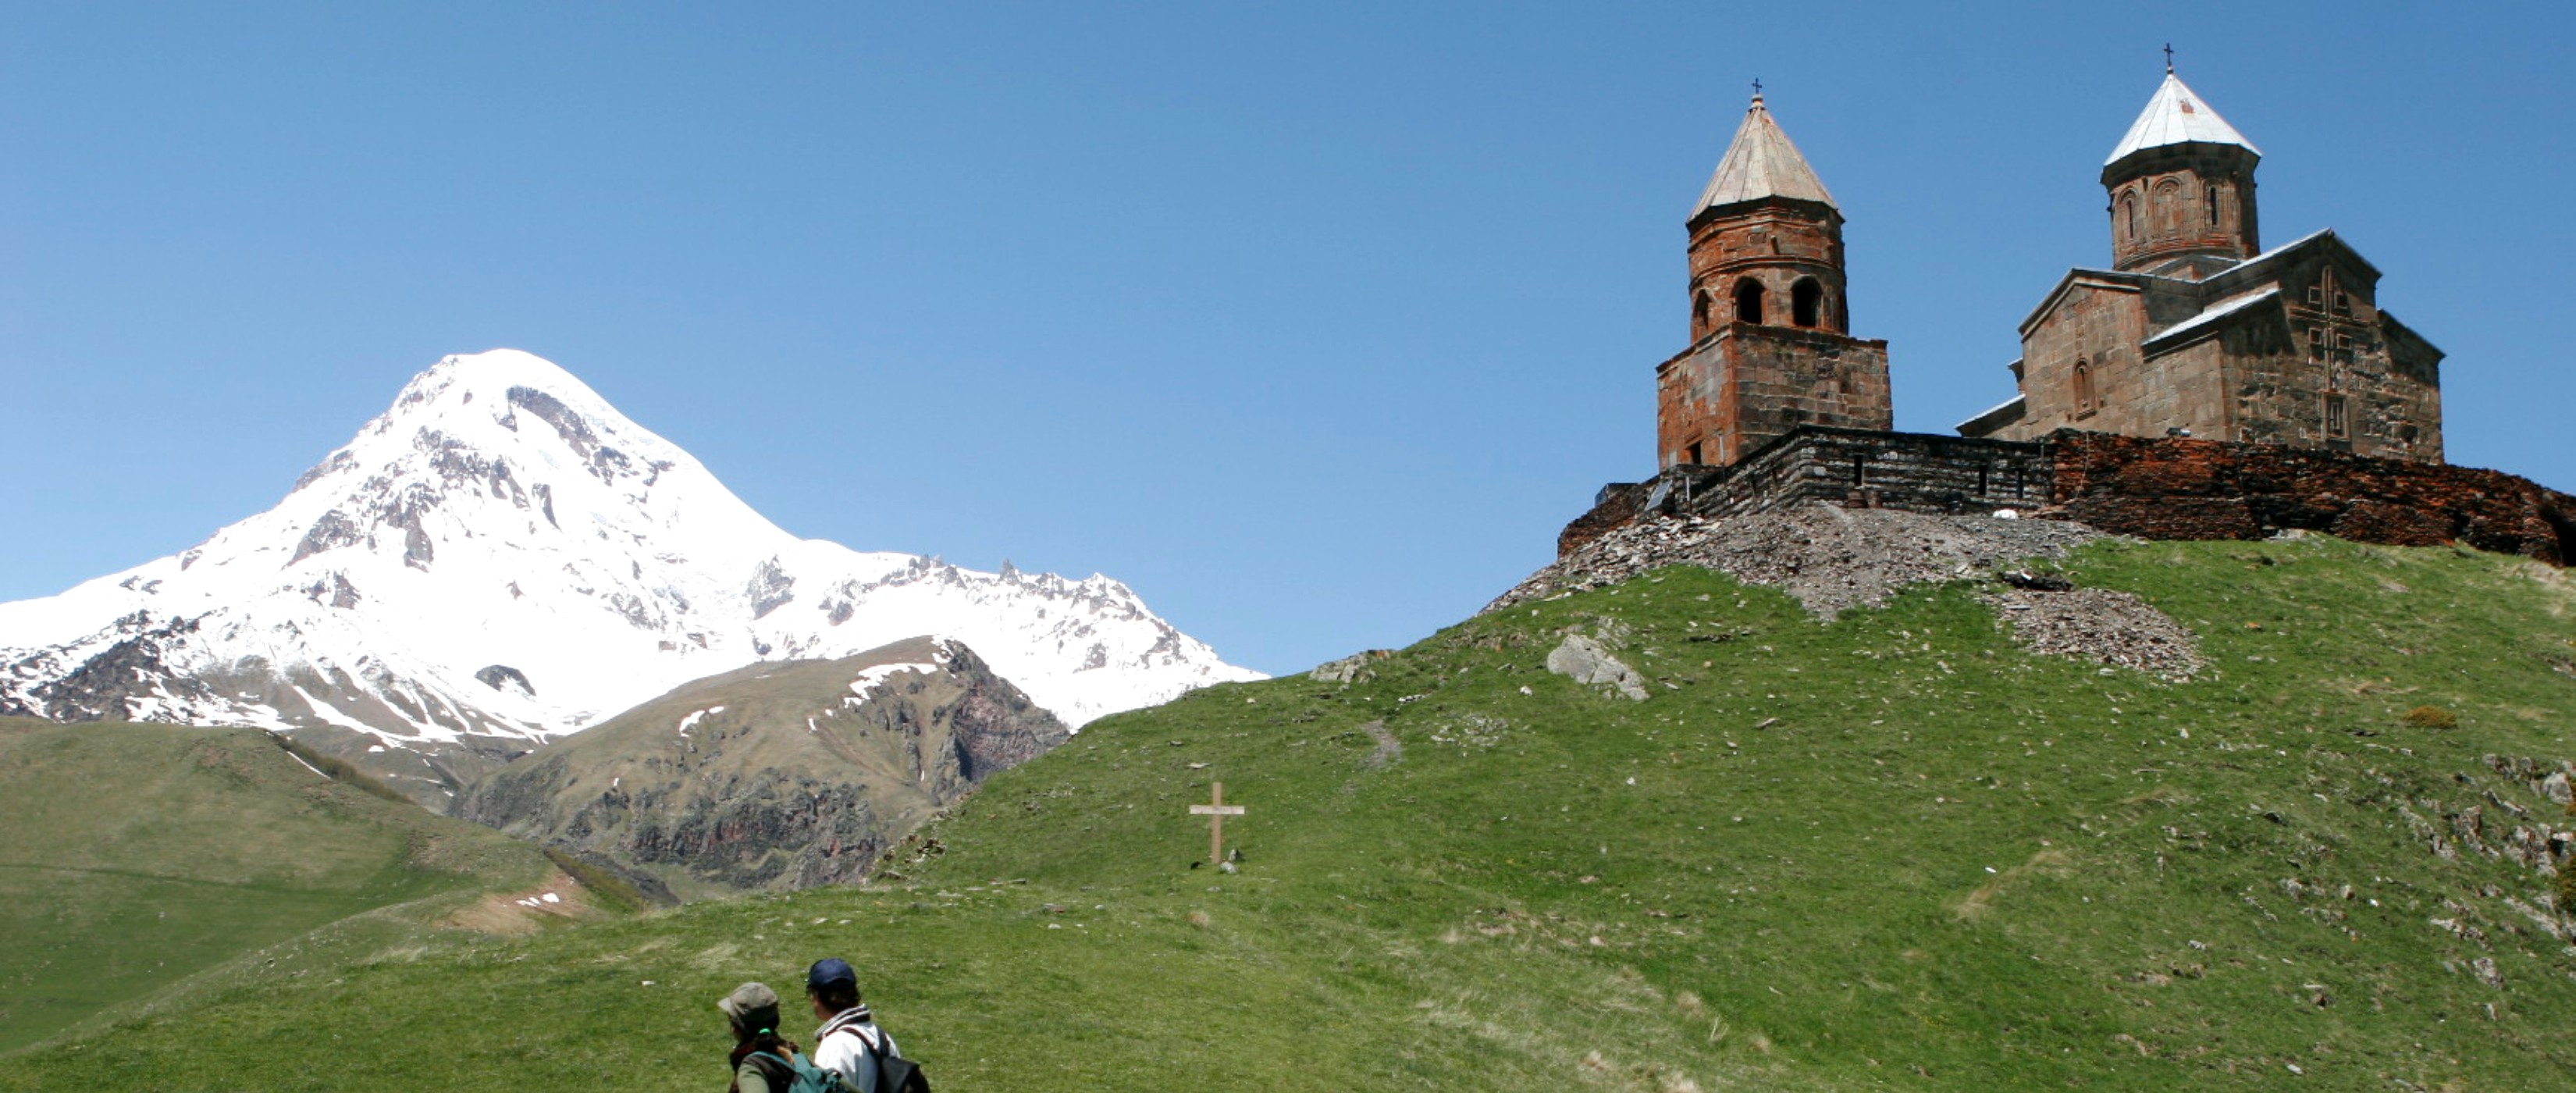 Dreifaltigkeitskirche mit Blick auf den Kasbeg  - Lupe Reisen